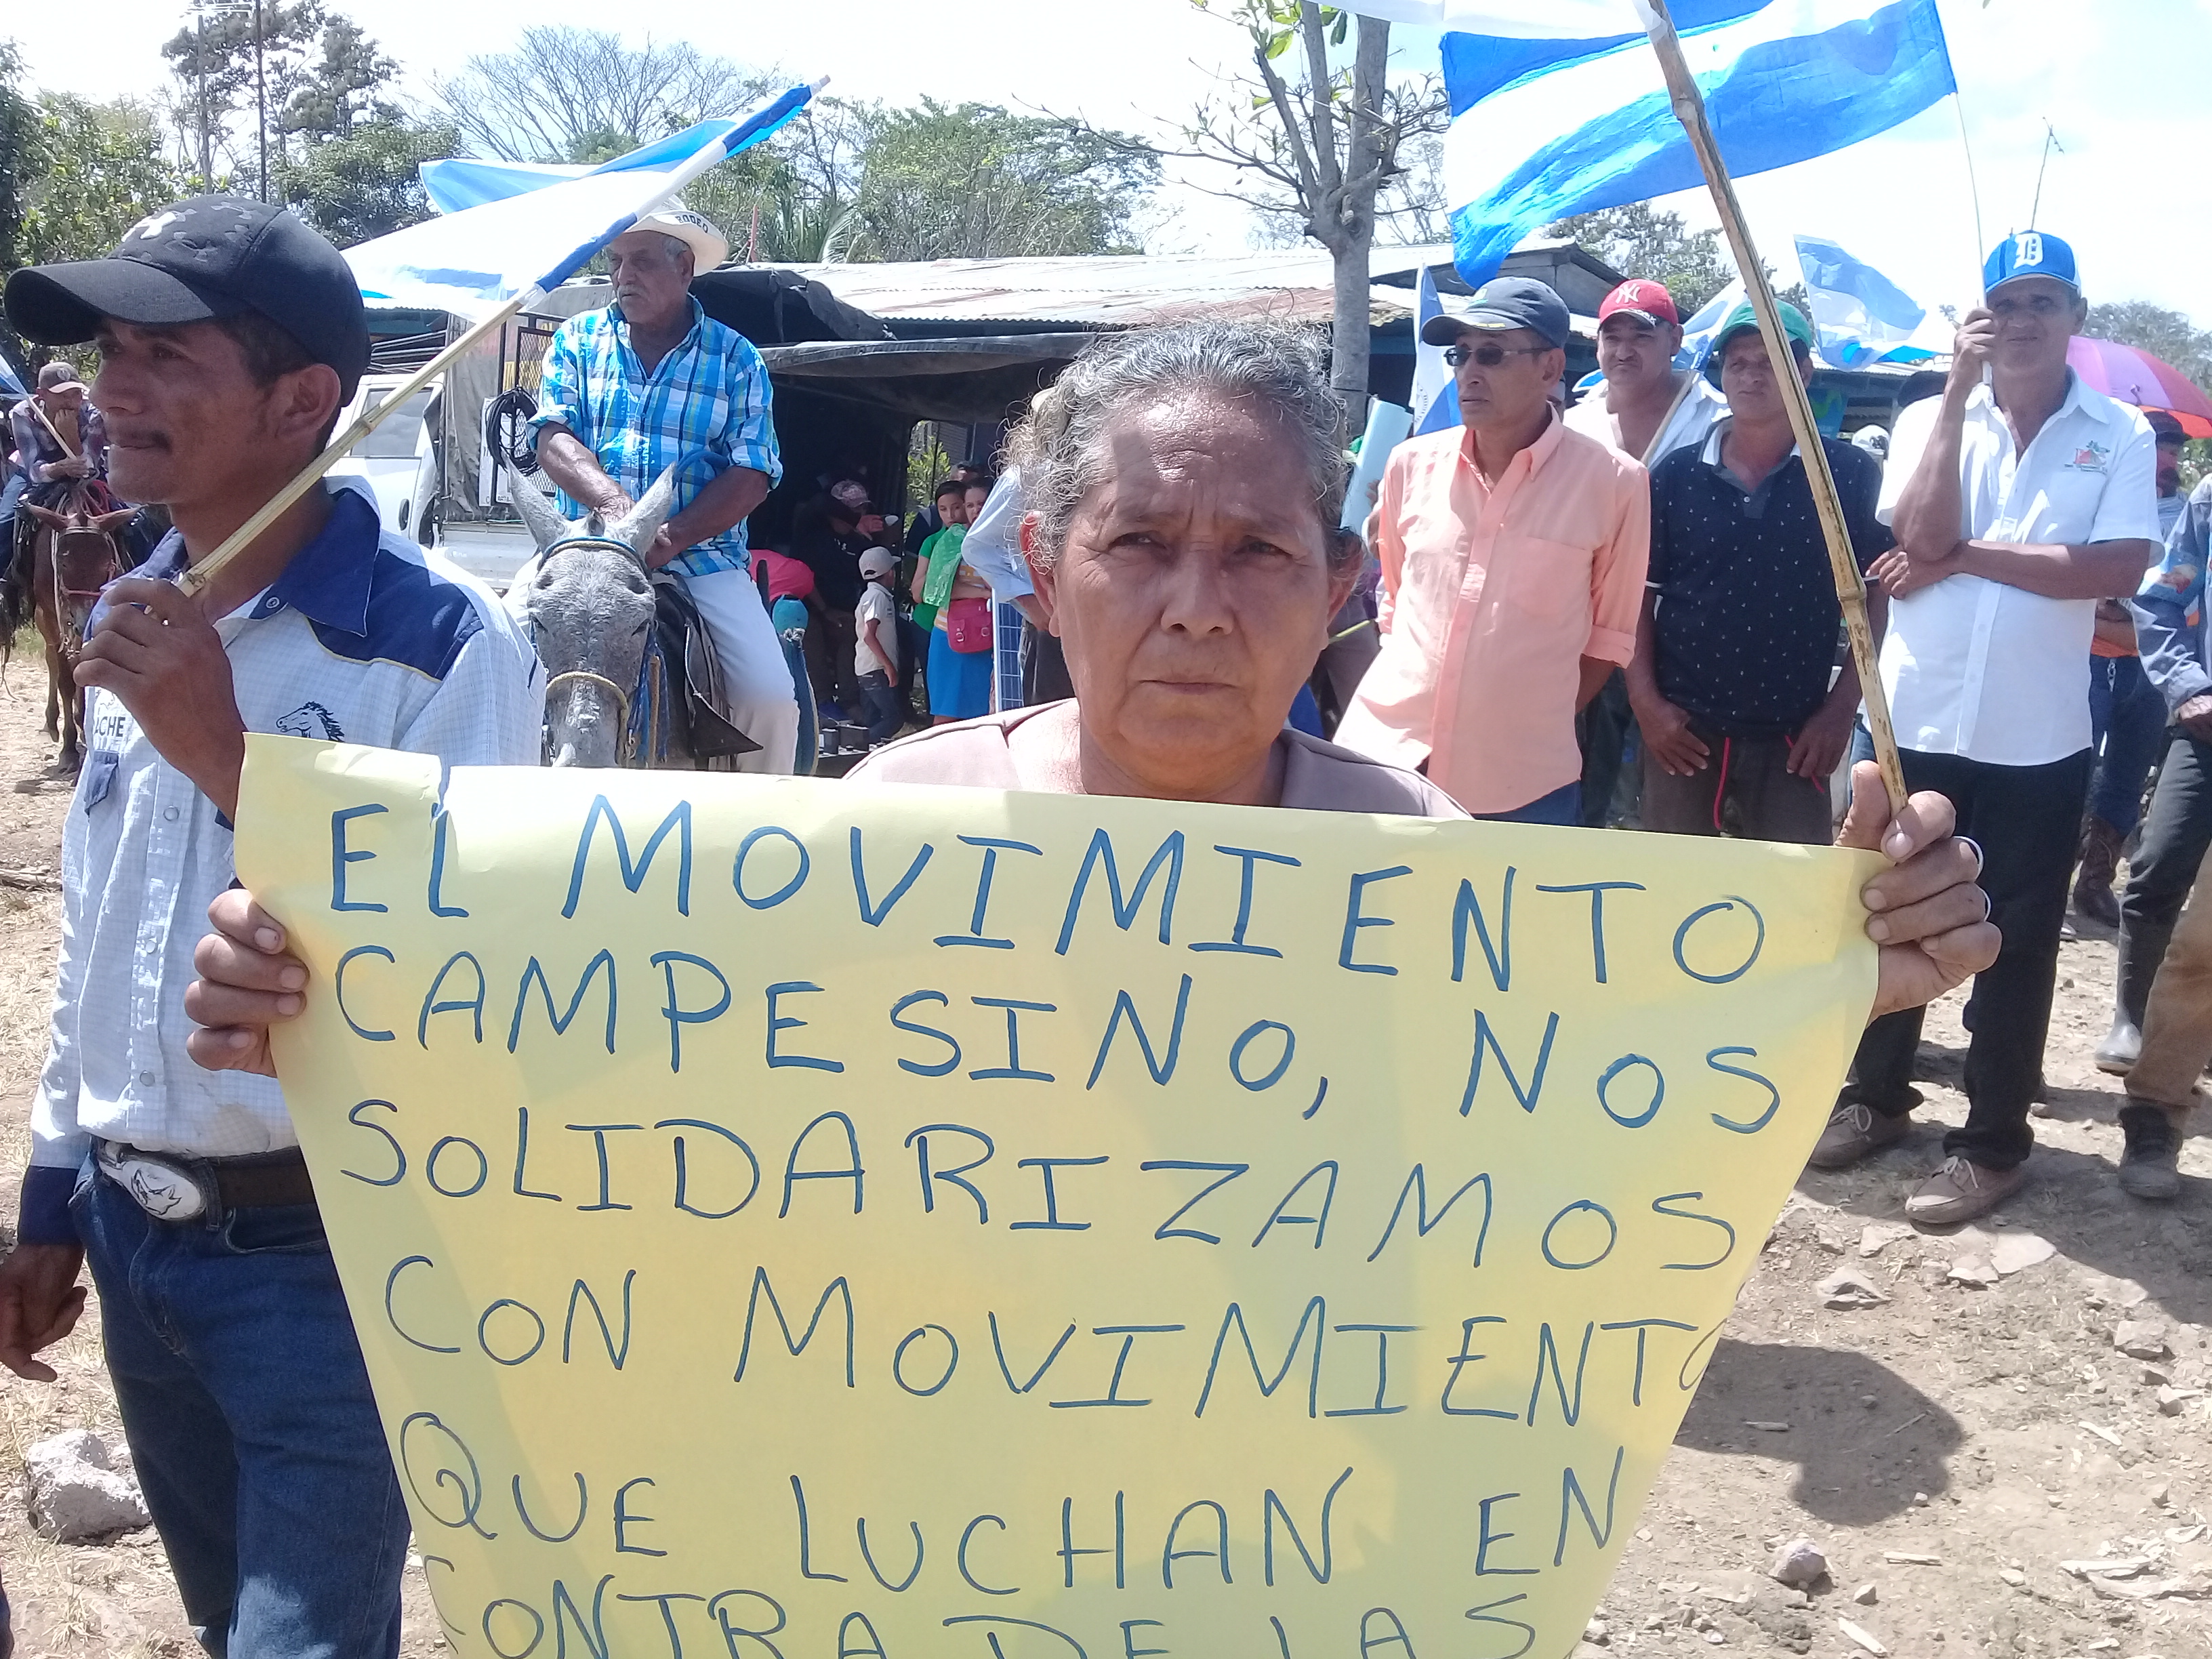 Movimiento Campesino apoya a otros movimientos sociales. Fotografía: Abixael MG/Artículo66